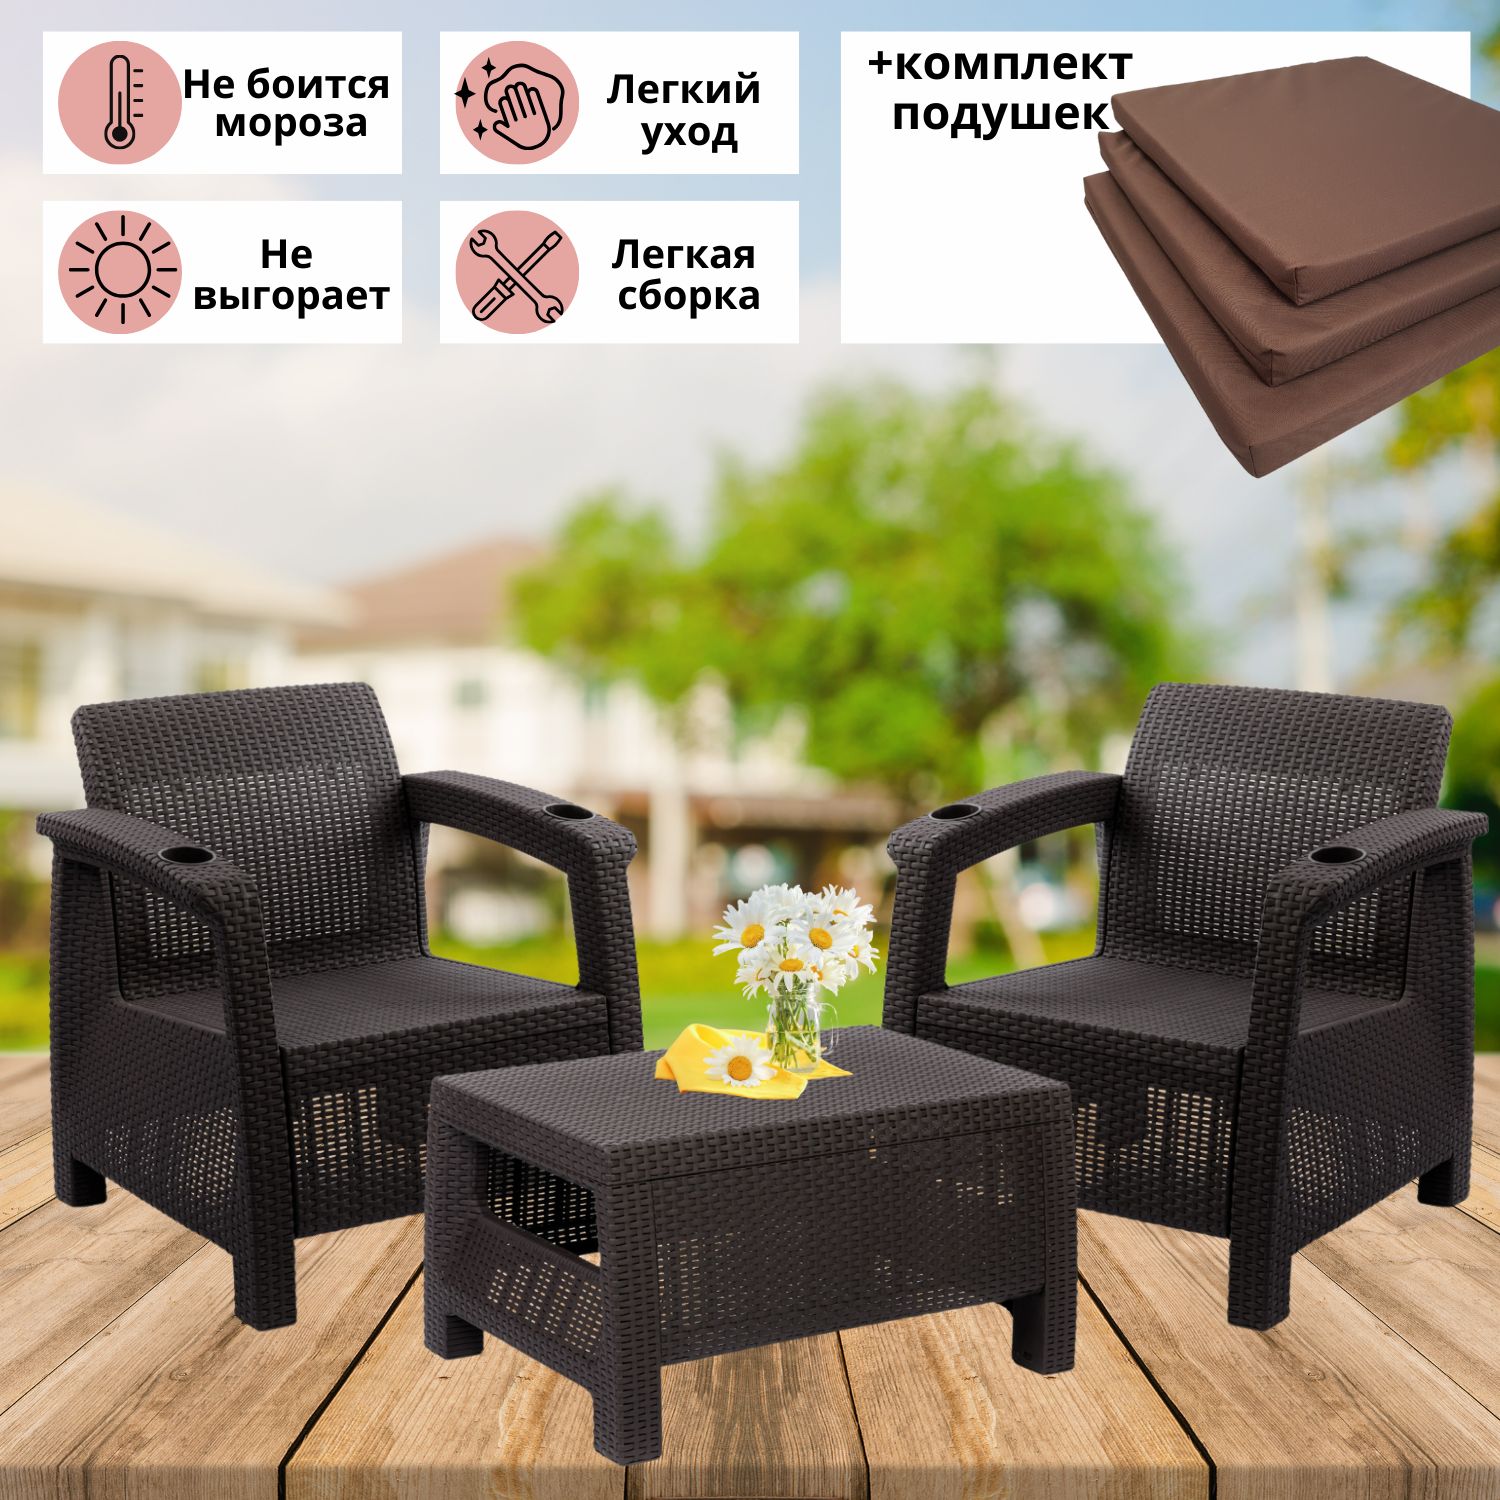 Набор садовой мебели Альтернатива на 2 персоны RT0027 темно-коричневый 2 кресла + столик